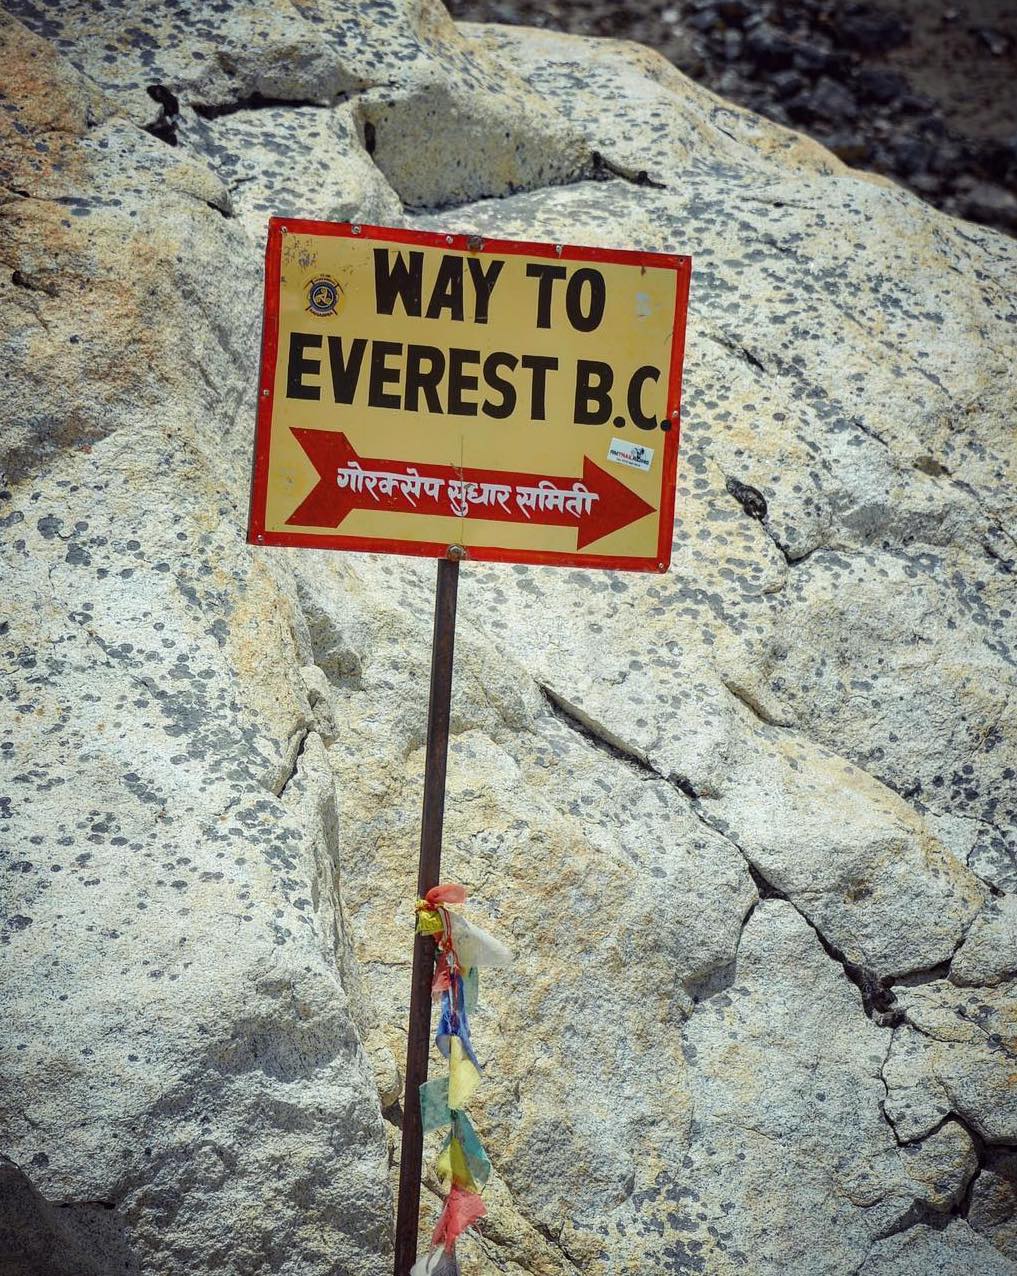 Mount Everest Base Camp sign